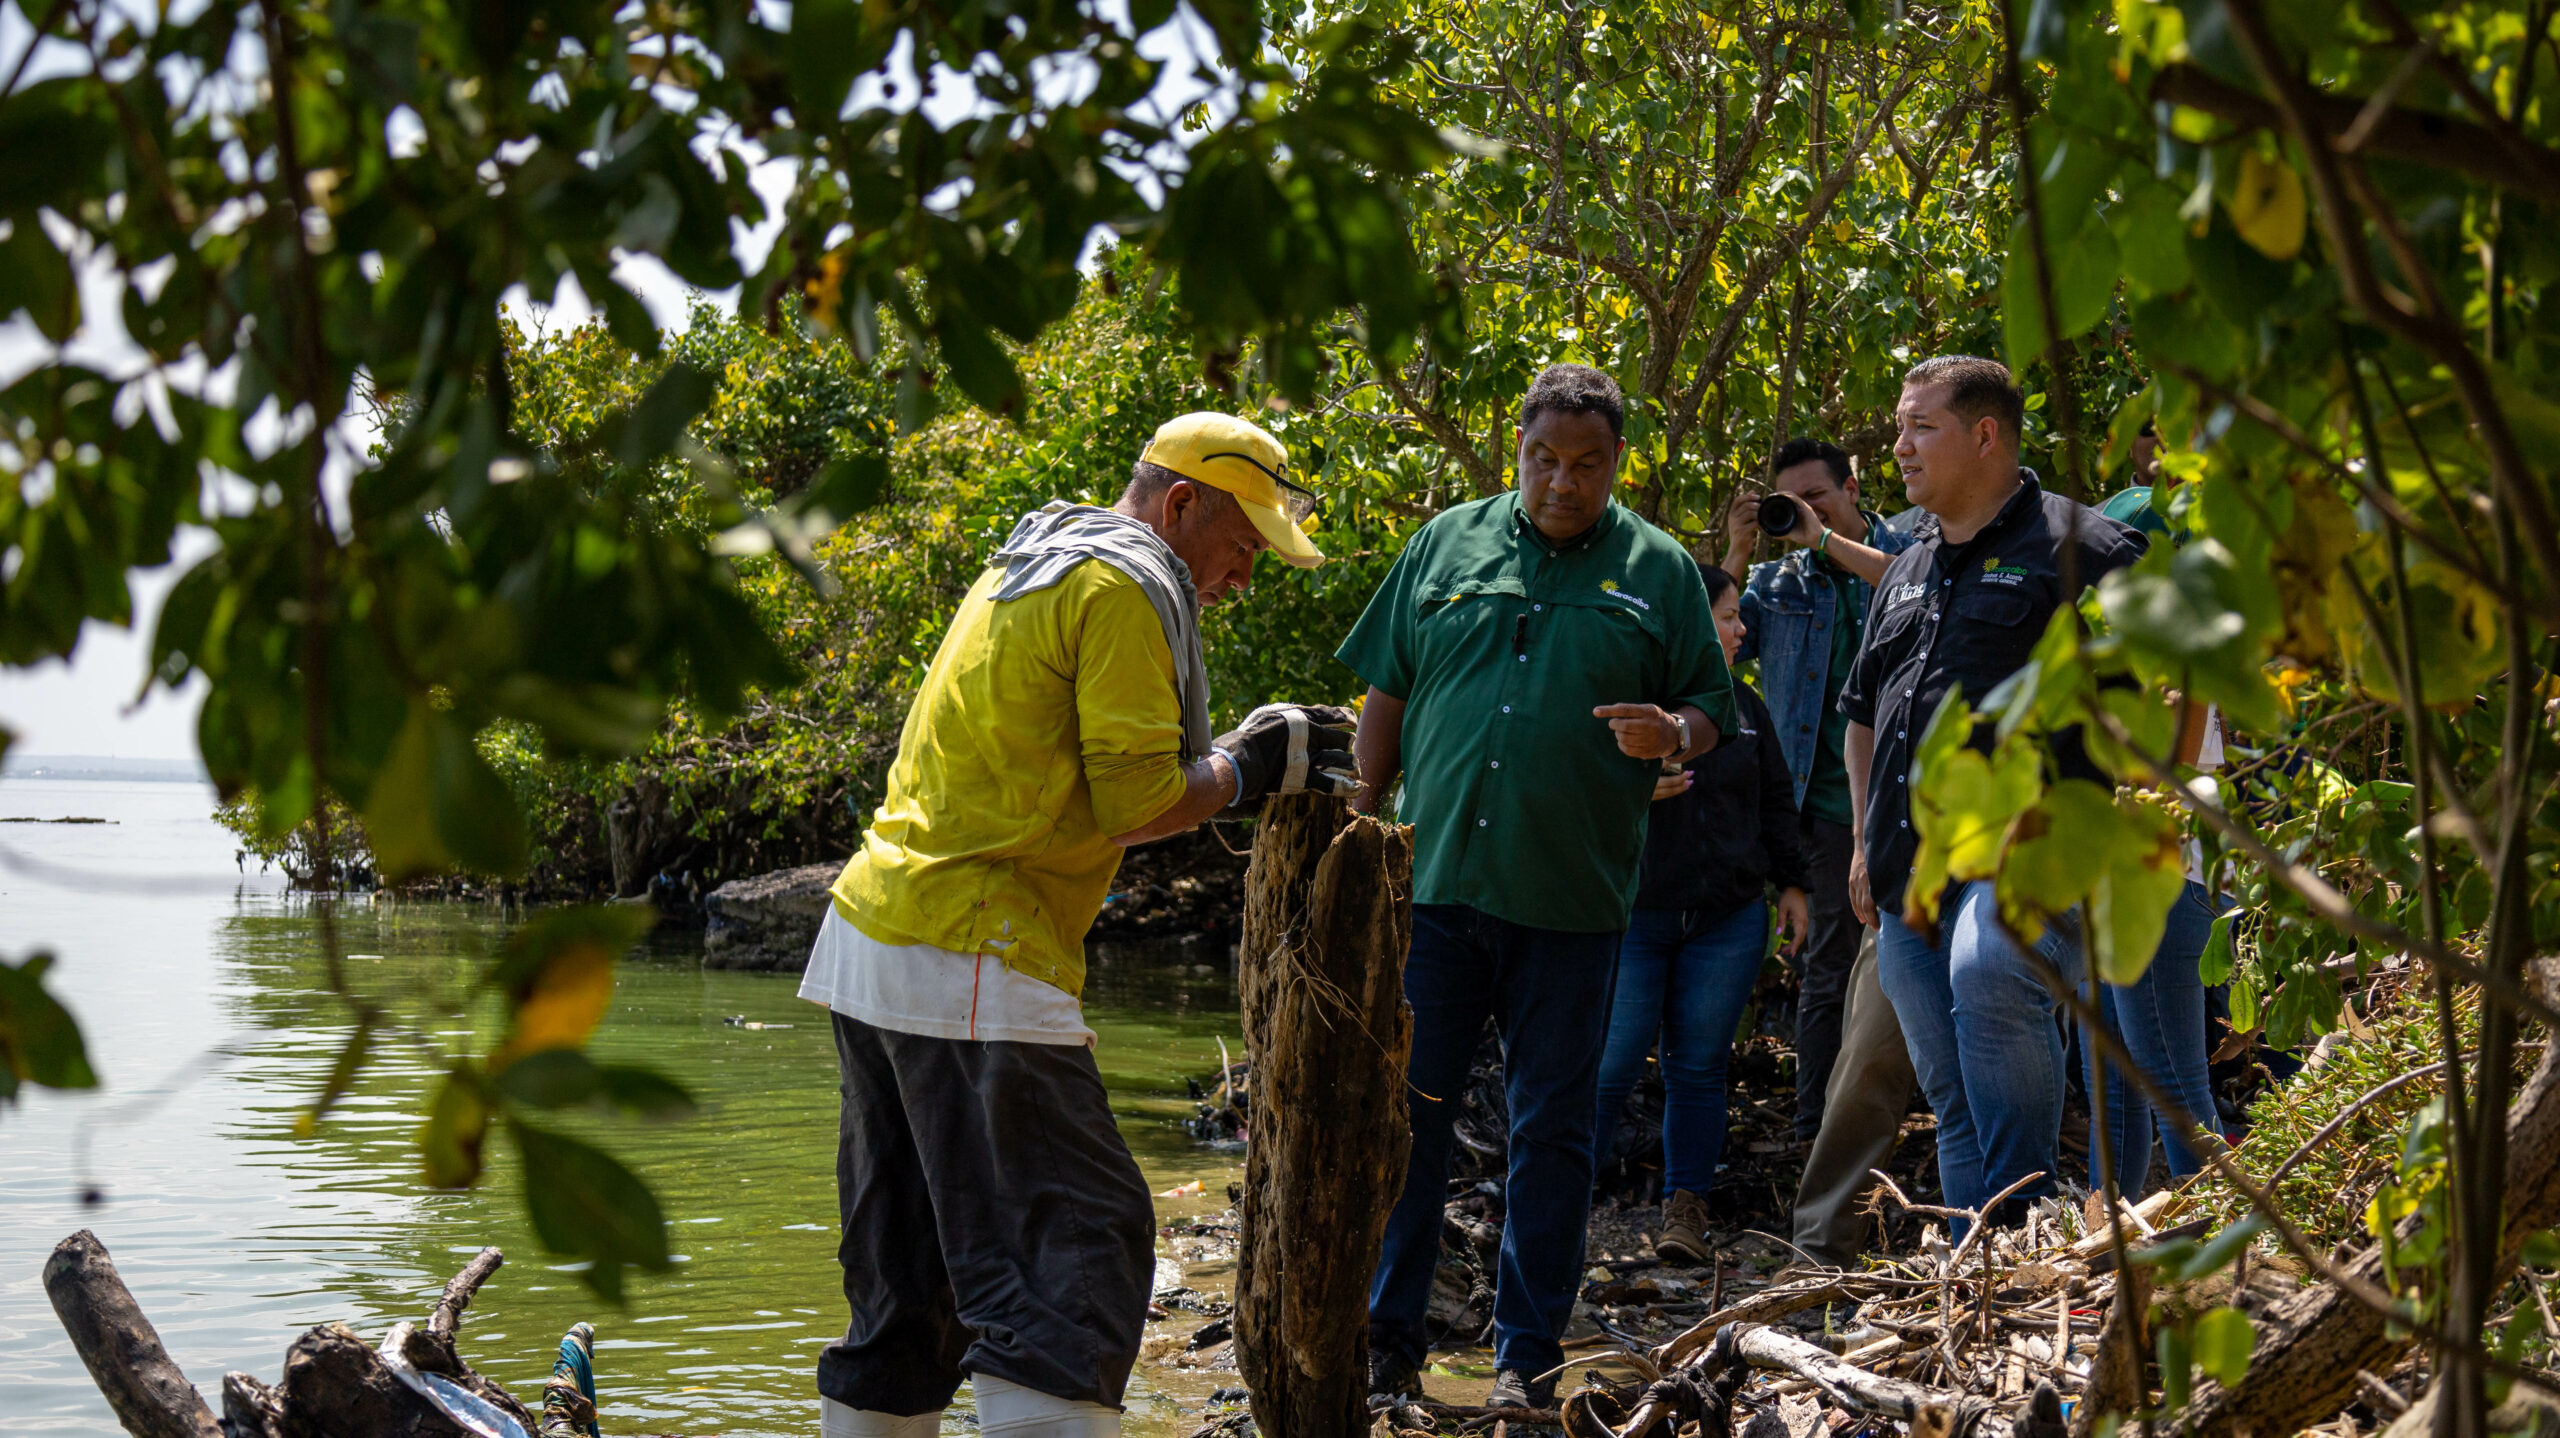 805 toneladas de desechos en 80 jornadas de limpieza ha recolectado la Alcaldía de Maracaibo en las riberas del Lago